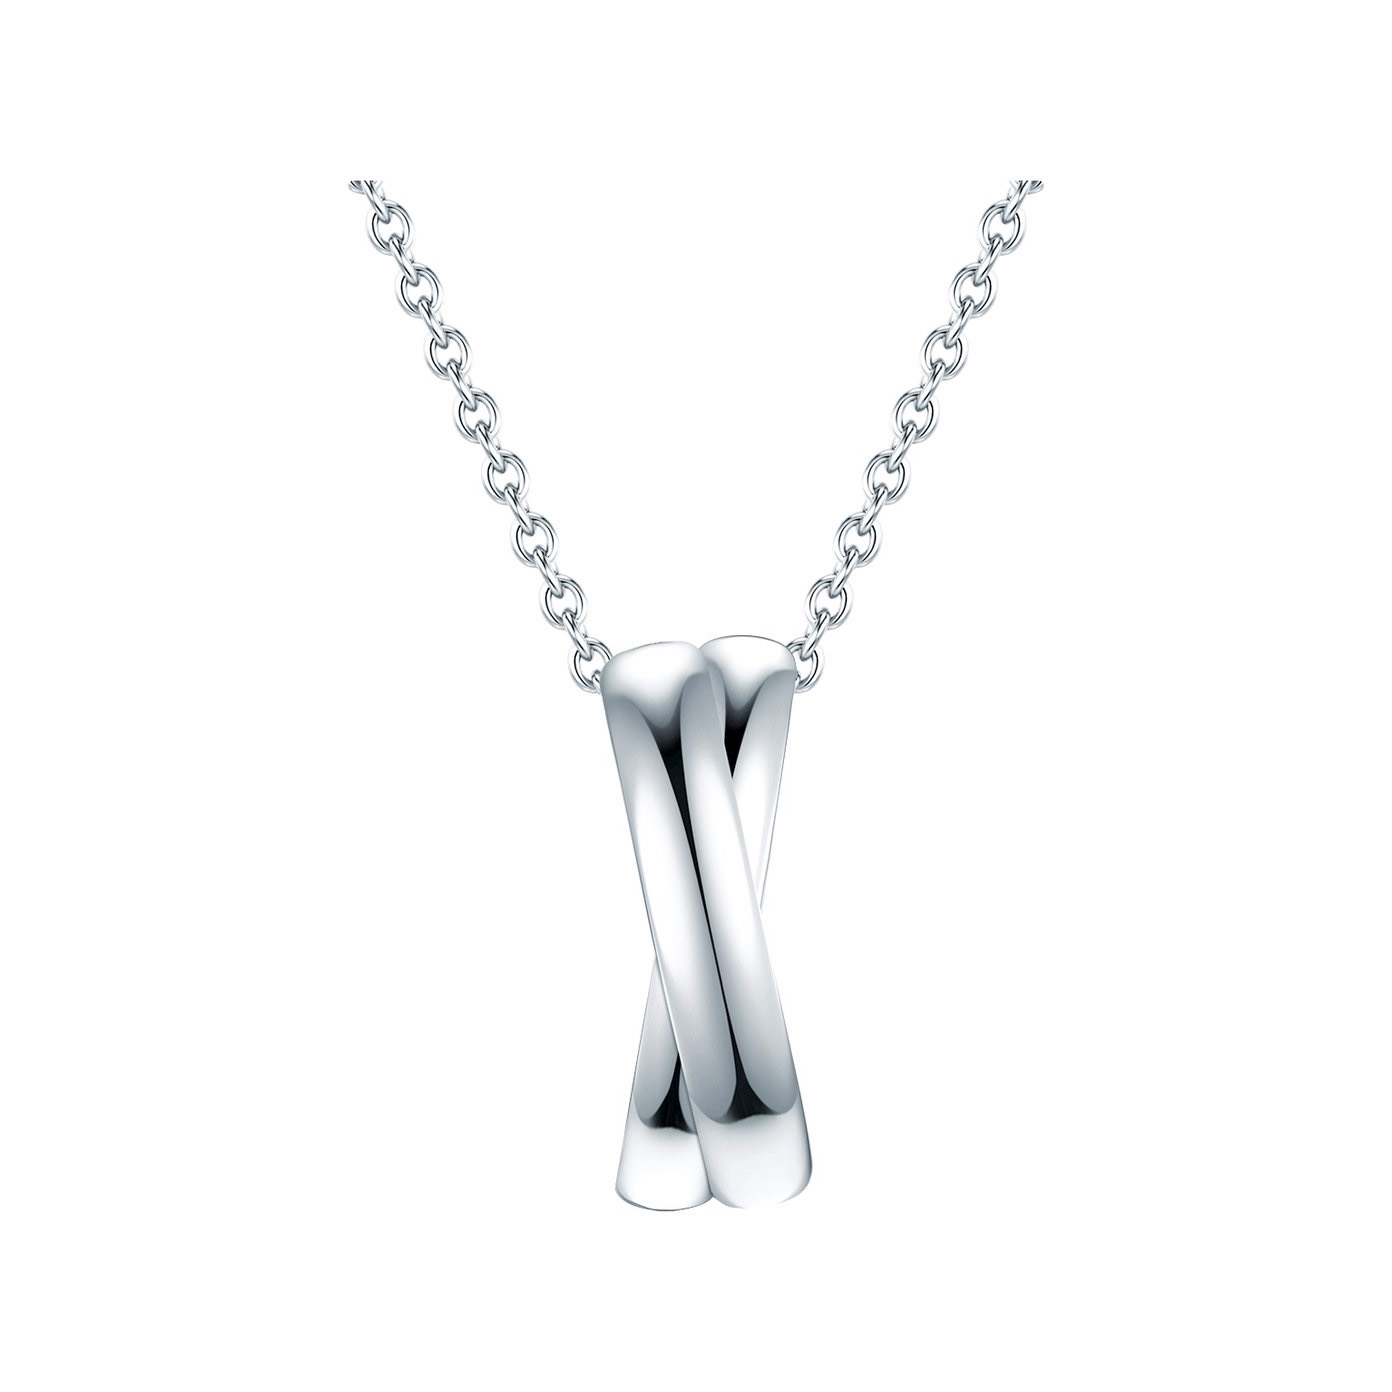 OEM/ODM ювелирные изделия Ожерелье с родиевым покрытием серебро OEM поставщики изысканных ювелирных изделий на заказ